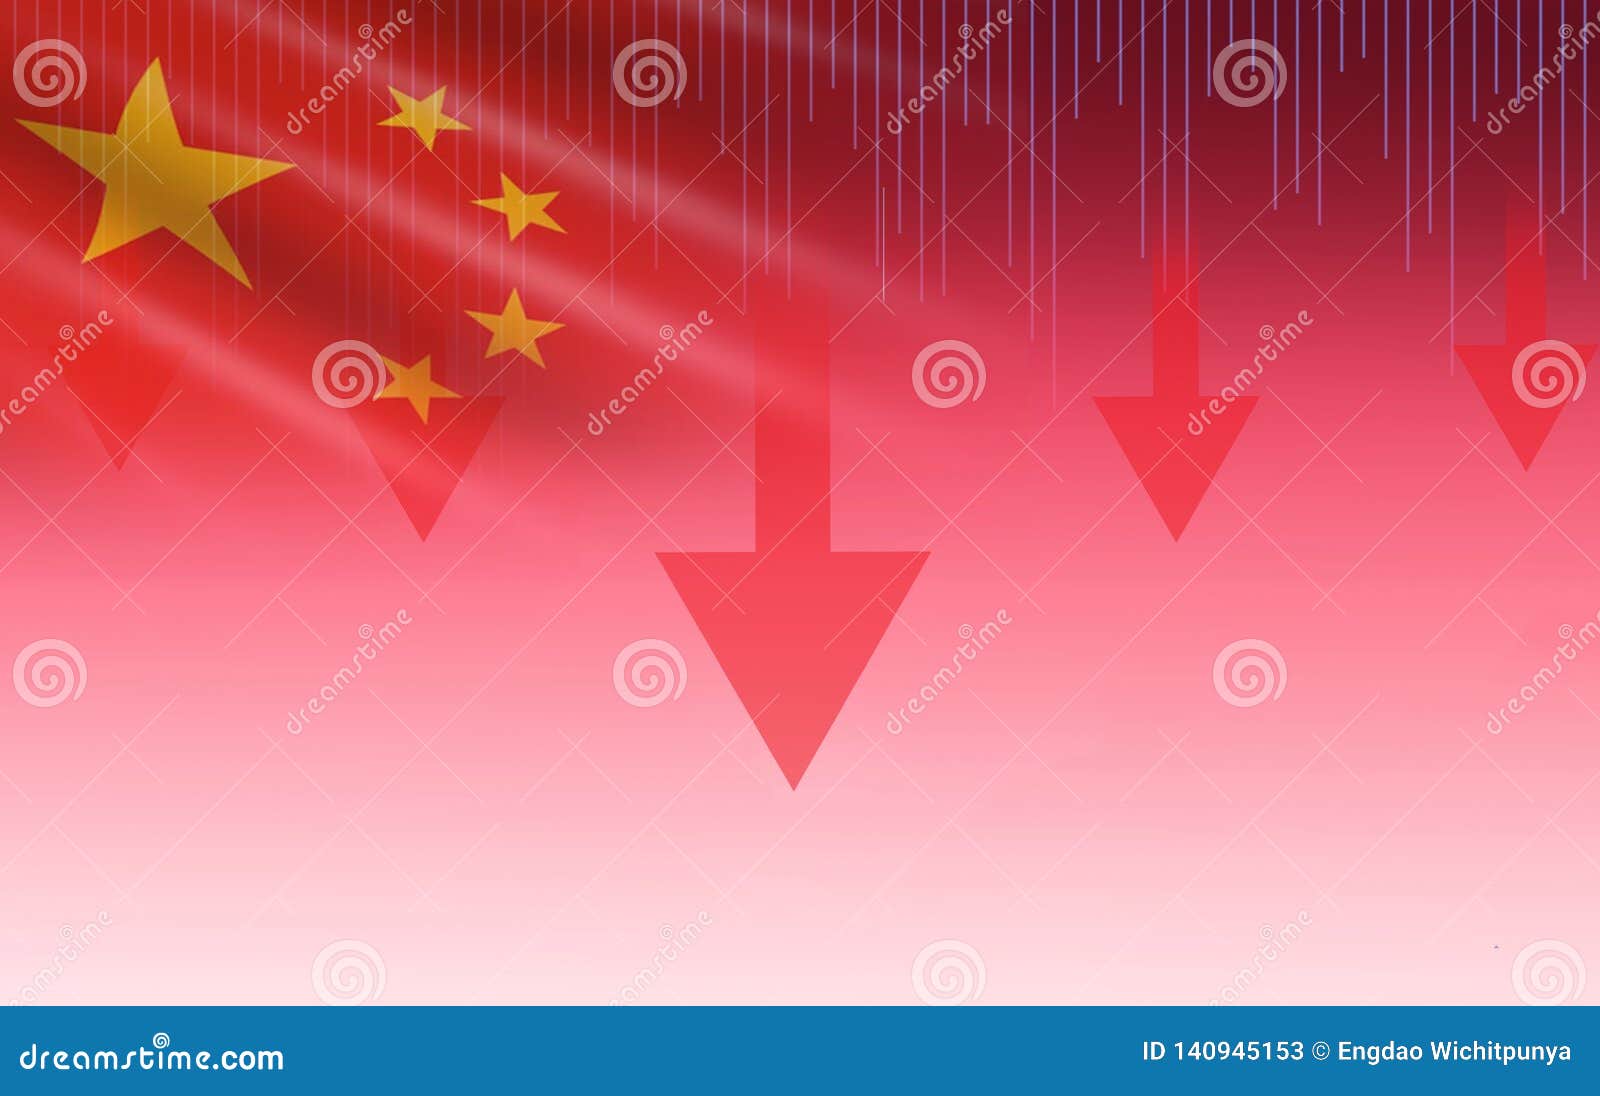 China Stock Exchange Chart